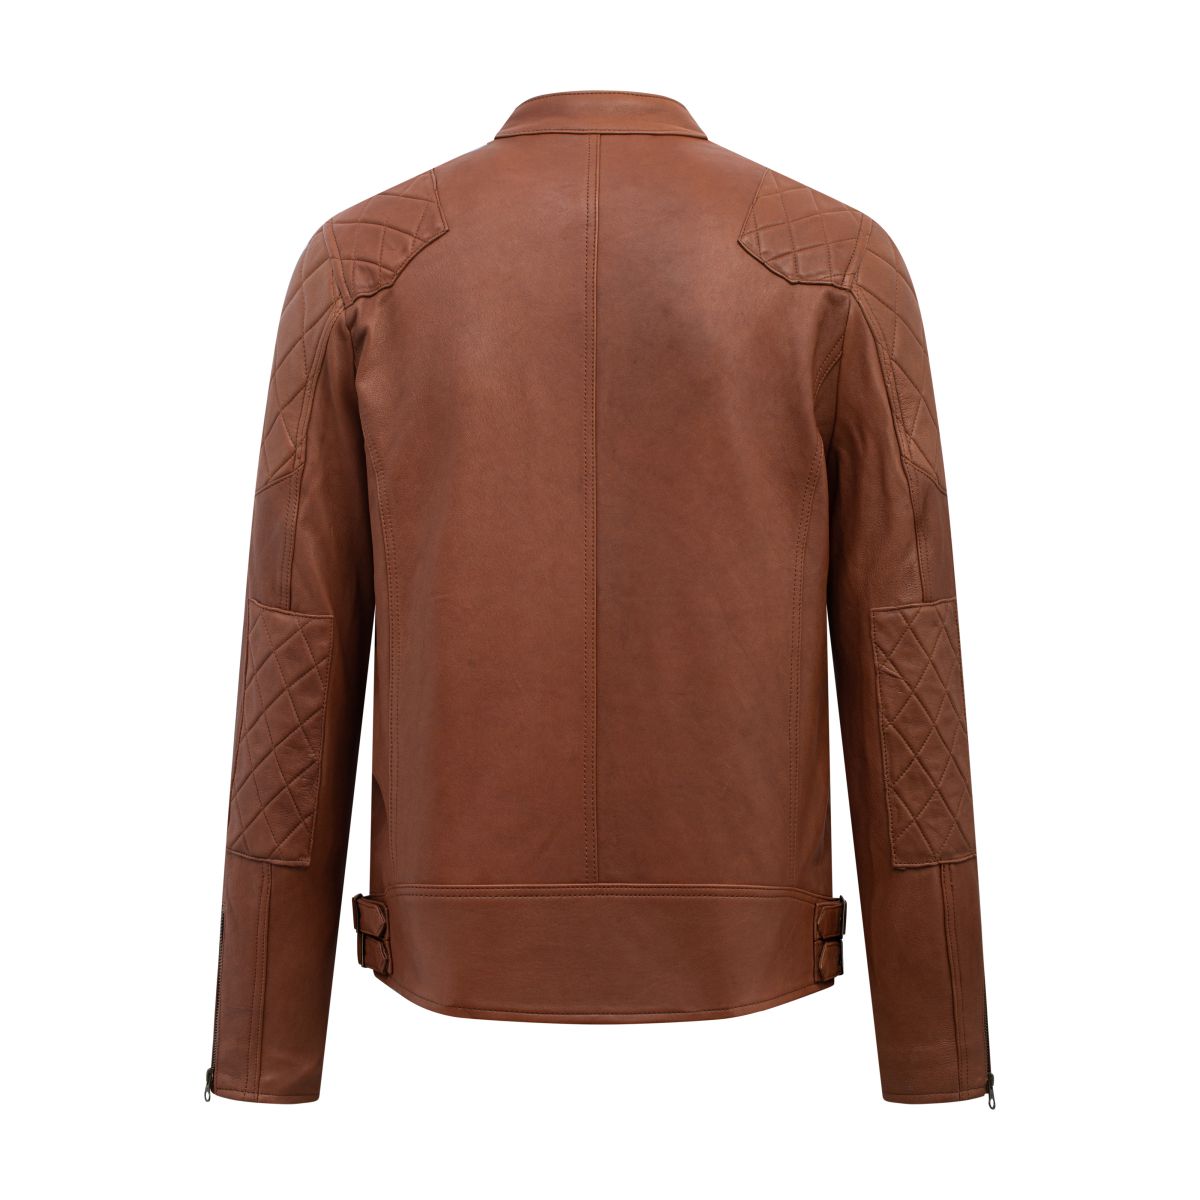 [AD-S2022] Áo da Motorcycle jacket trần bông quả trám vai - Đen khóa bạc AD308D40